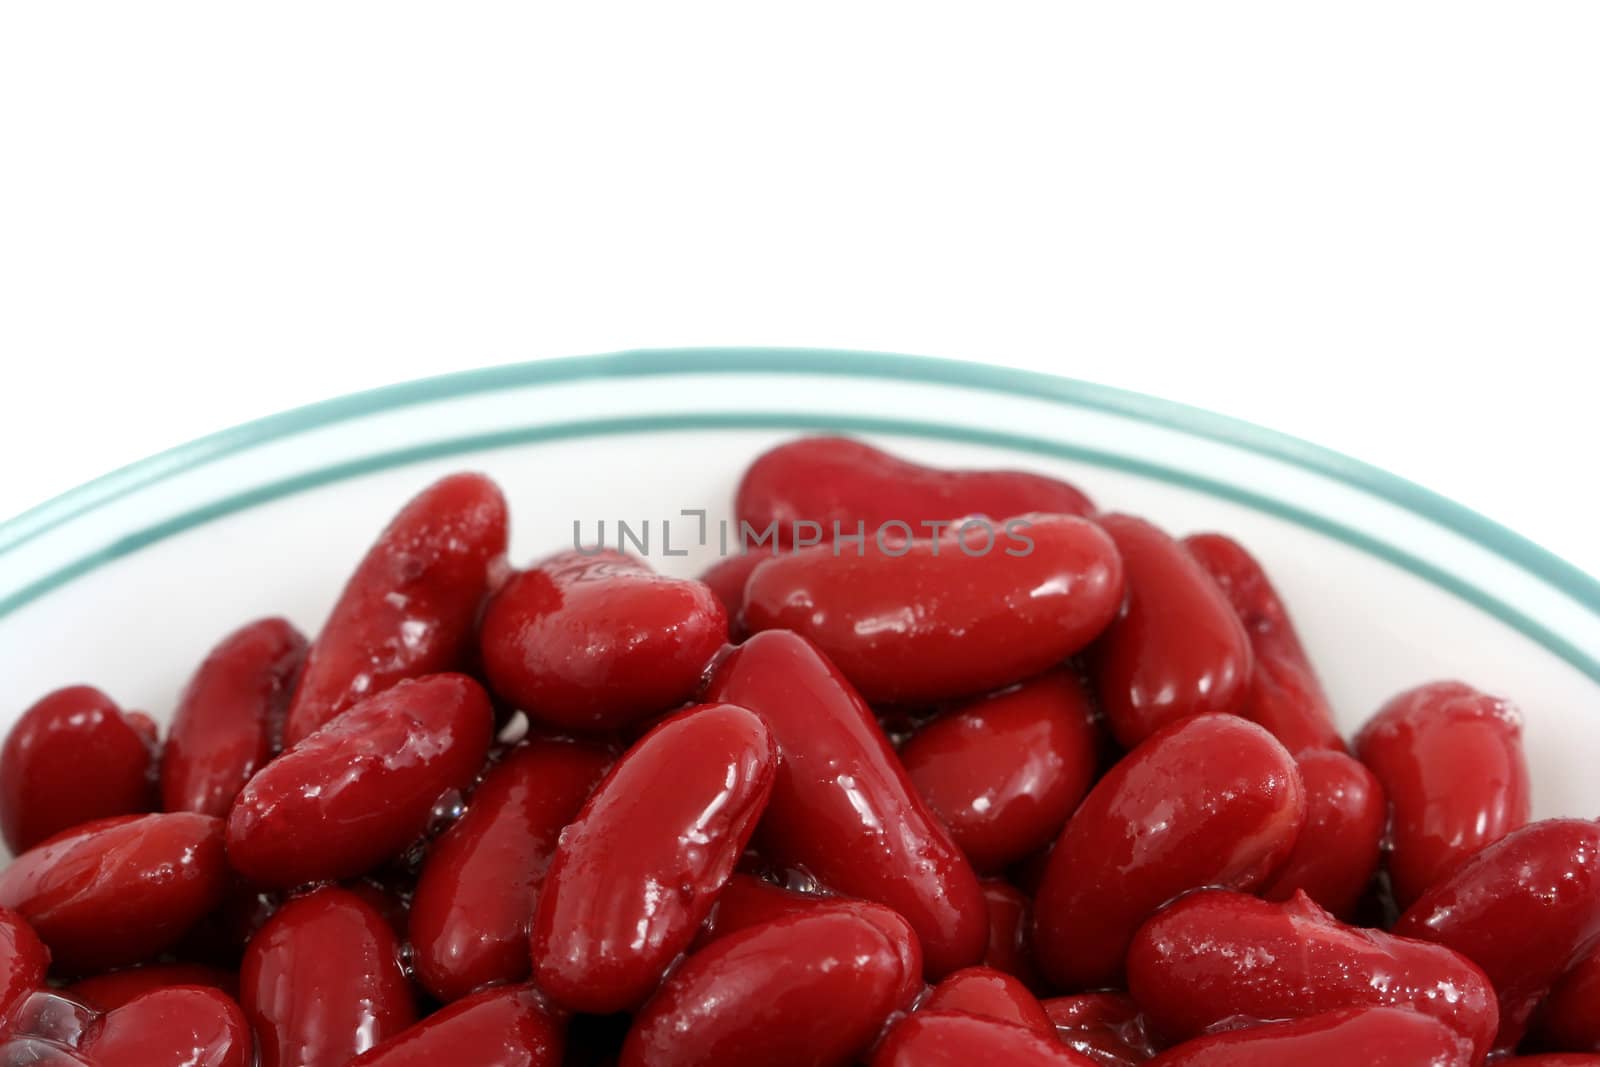 Dark kidney beans in a bowl